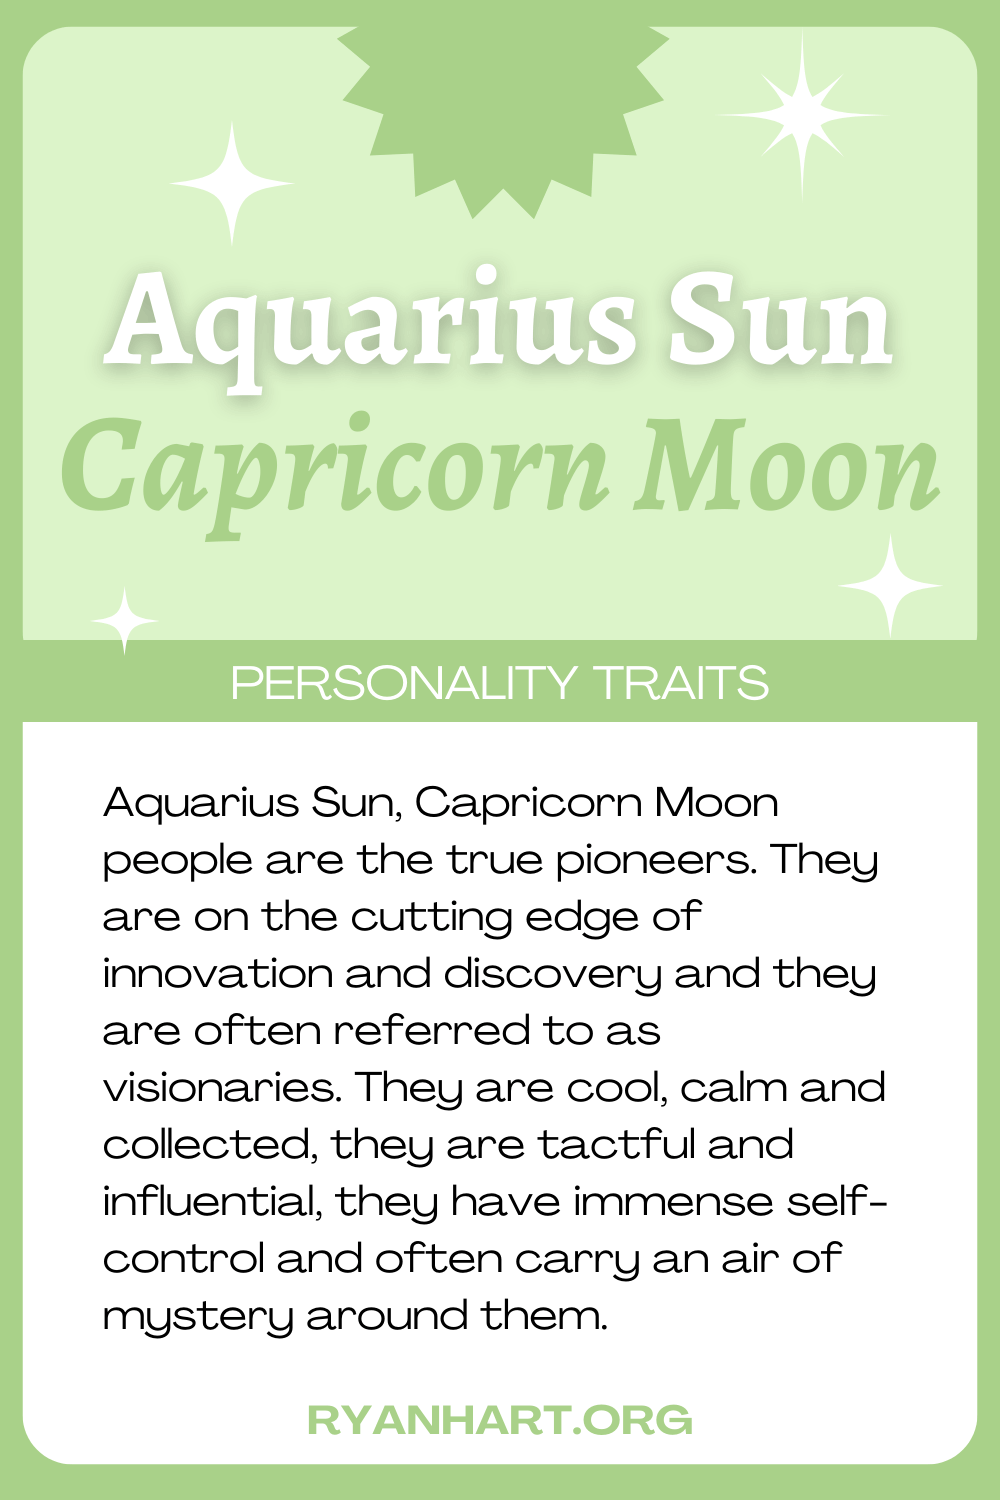  Tabia za Mtu wa Aquarius Sun Capricorn Moon